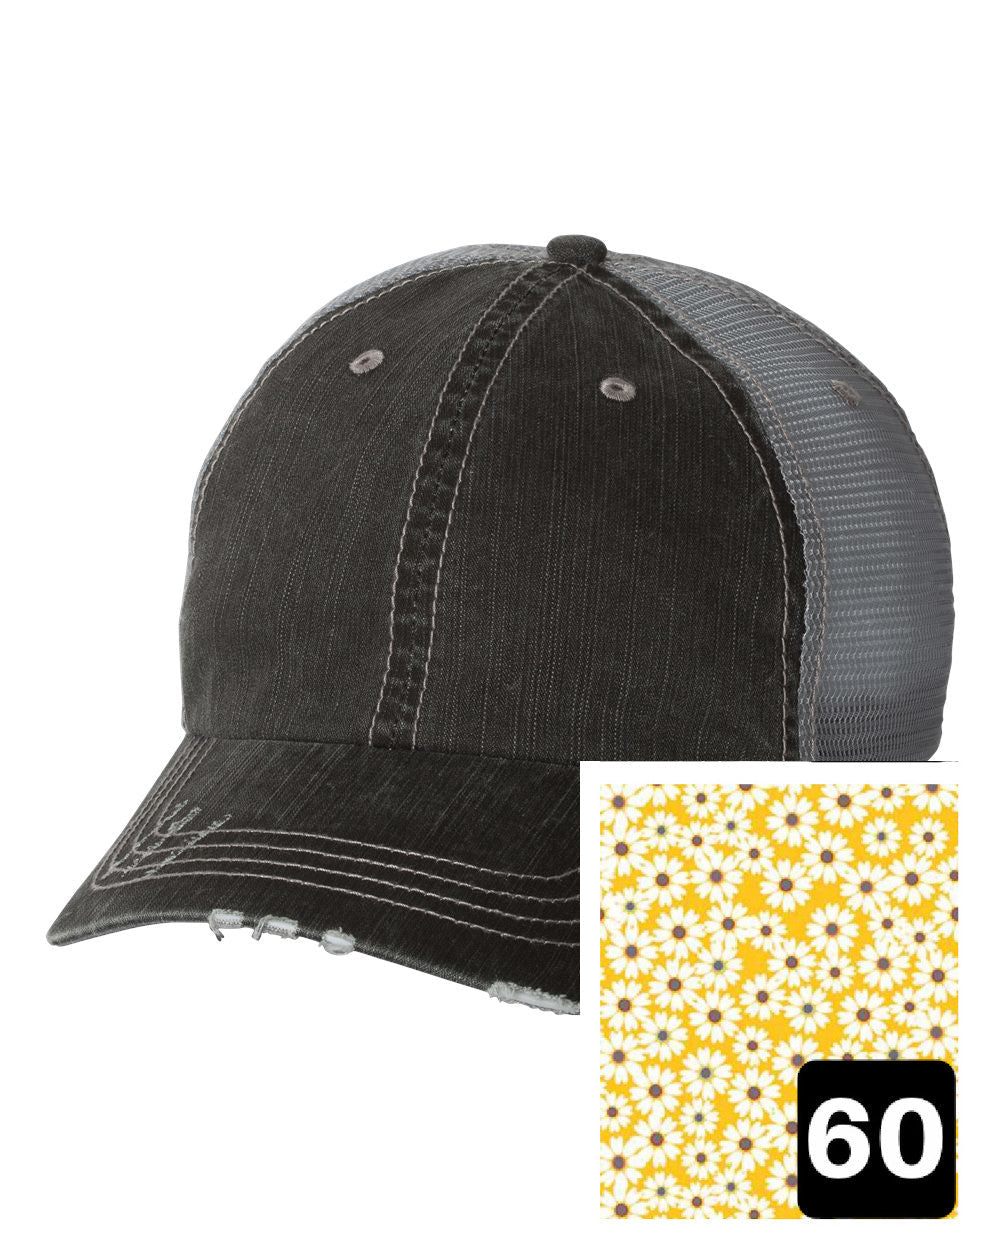 Idaho Hat | Gray Distressed Trucker Cap | Many Fabric Choices